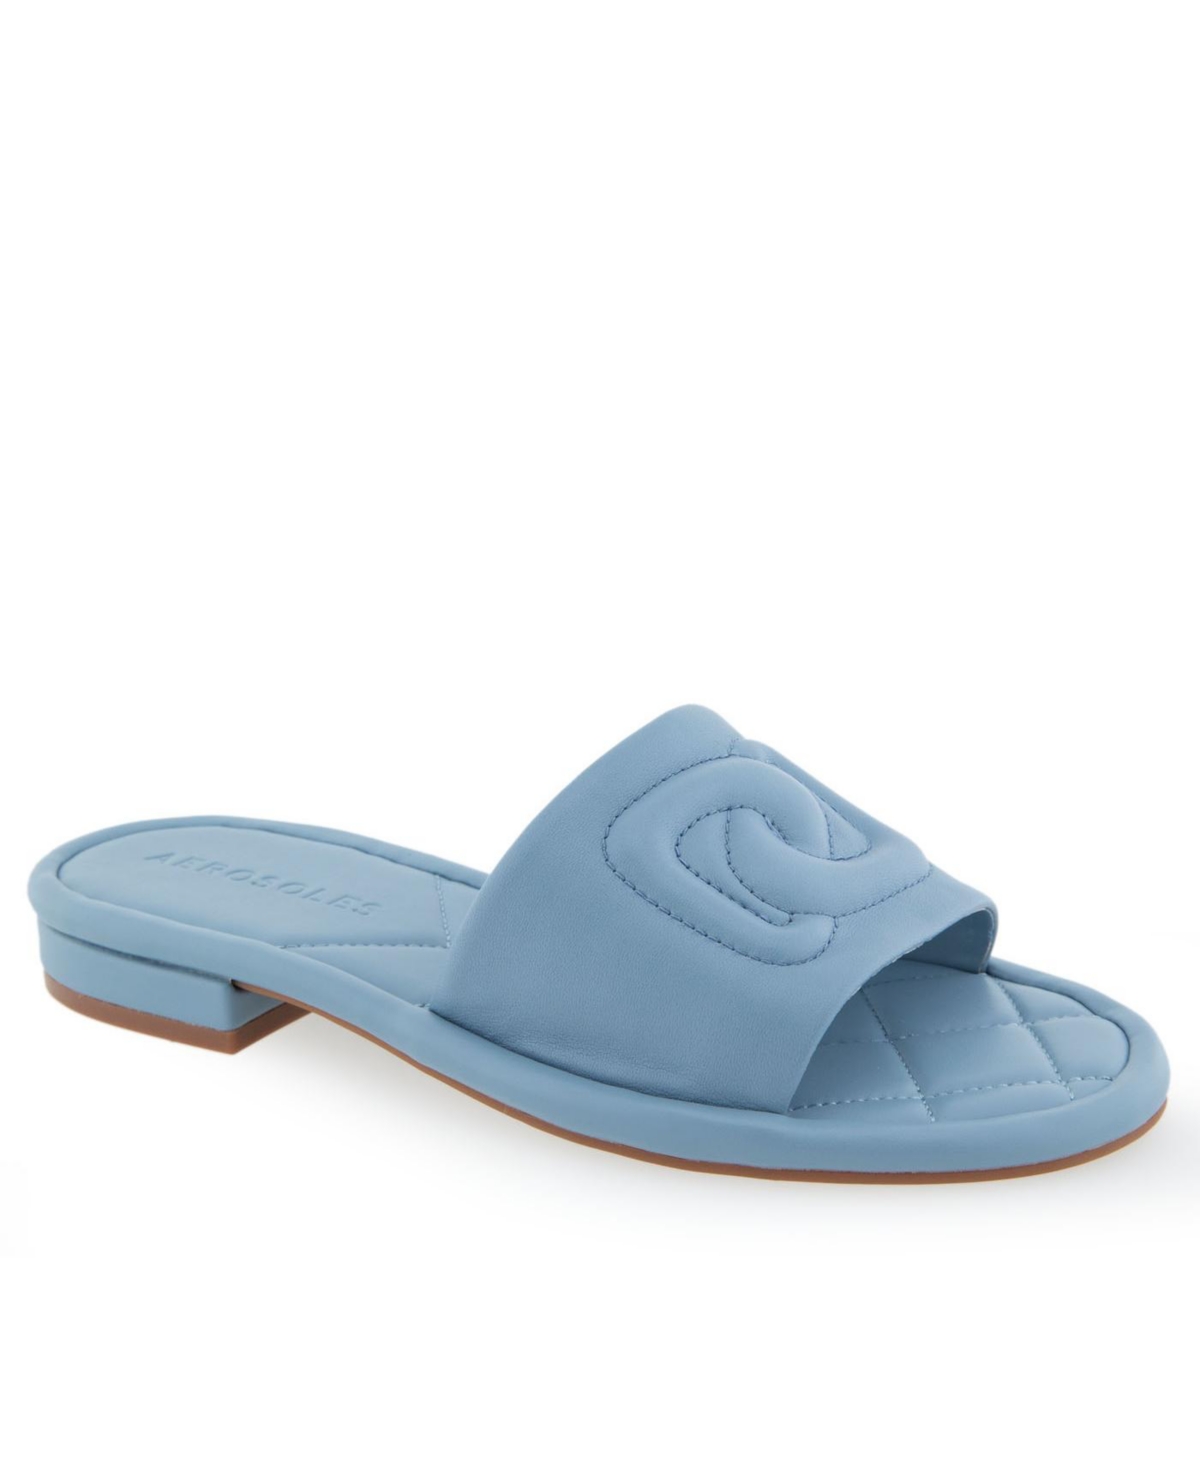 Shop Aerosoles Women's Jilda Slip-on Sandals In Dusty Blue Leather